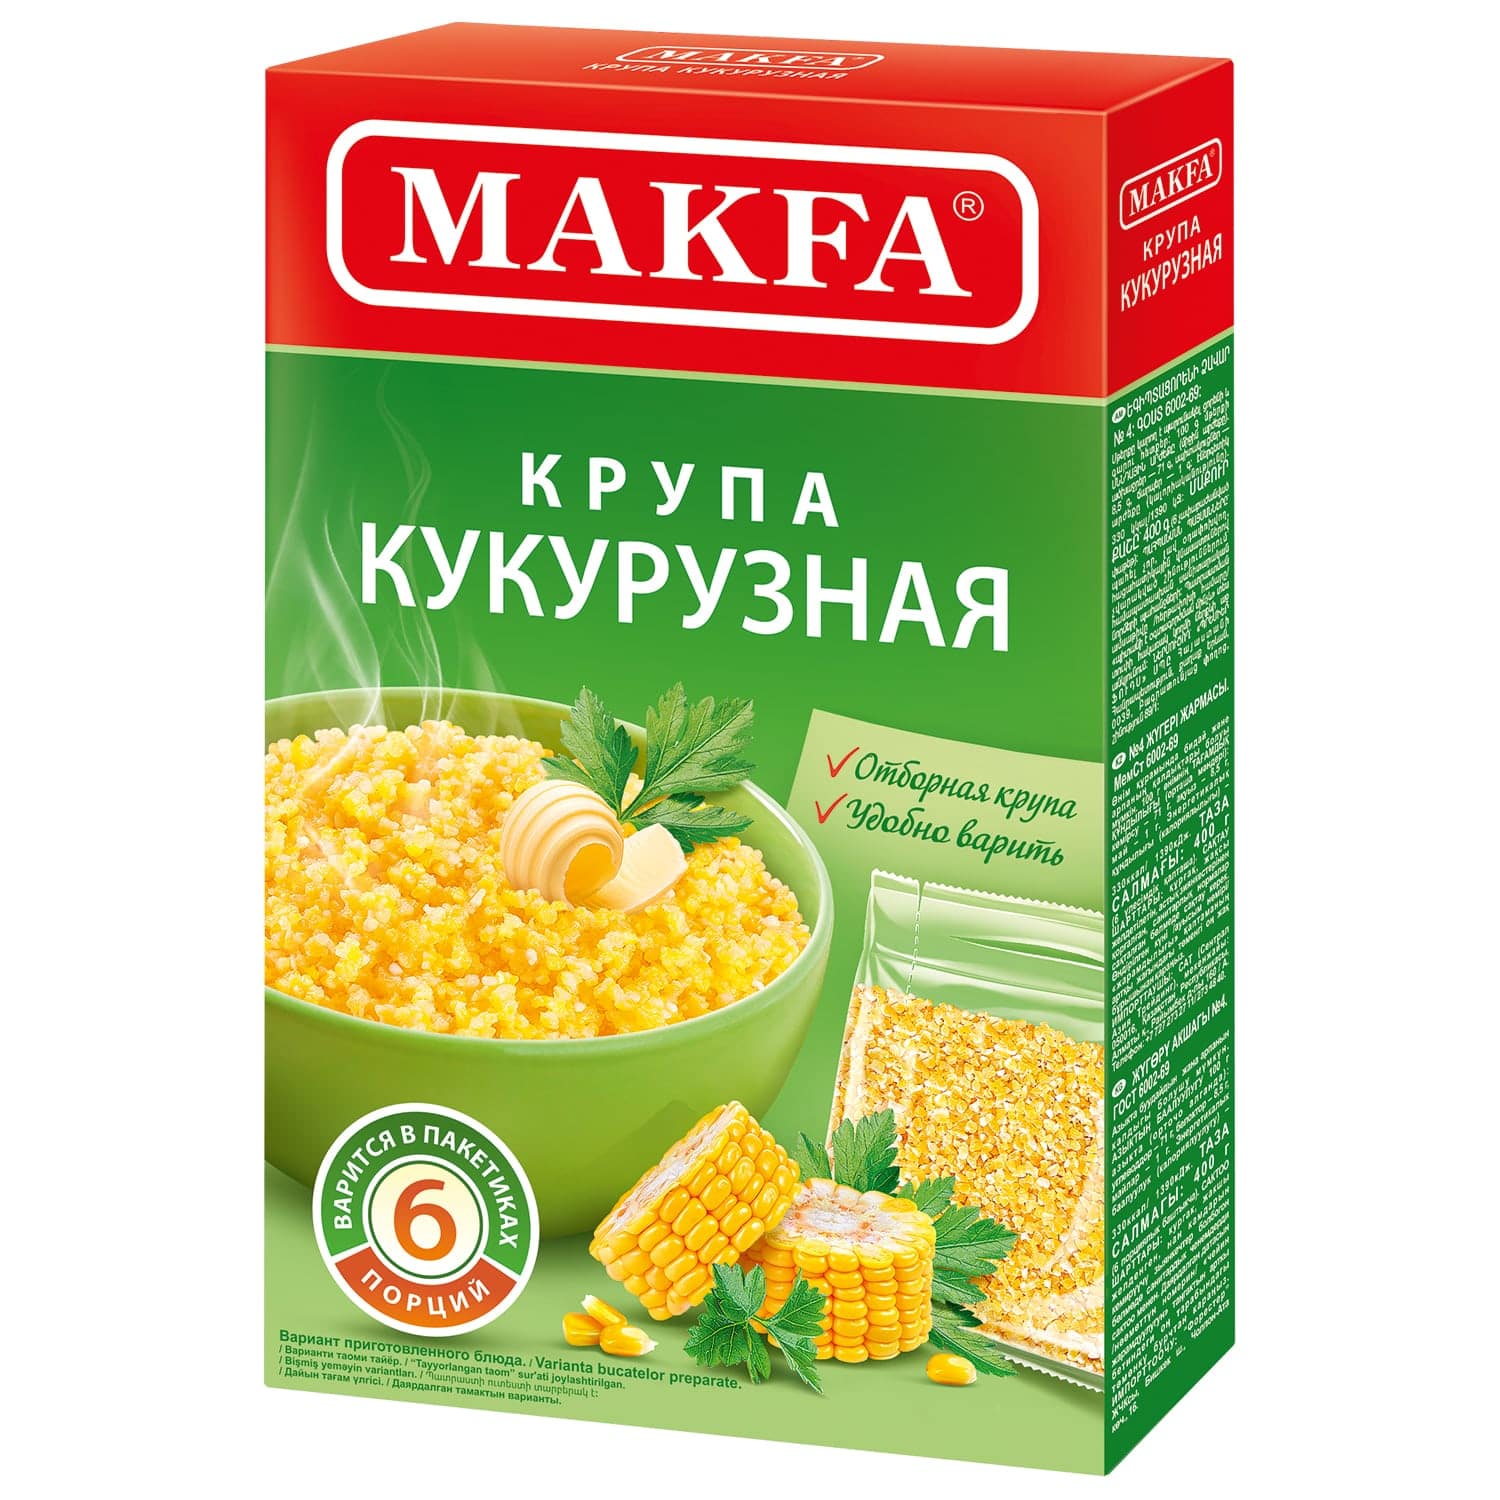 Крупа кукурузная MAKFA в пакетиках для варки